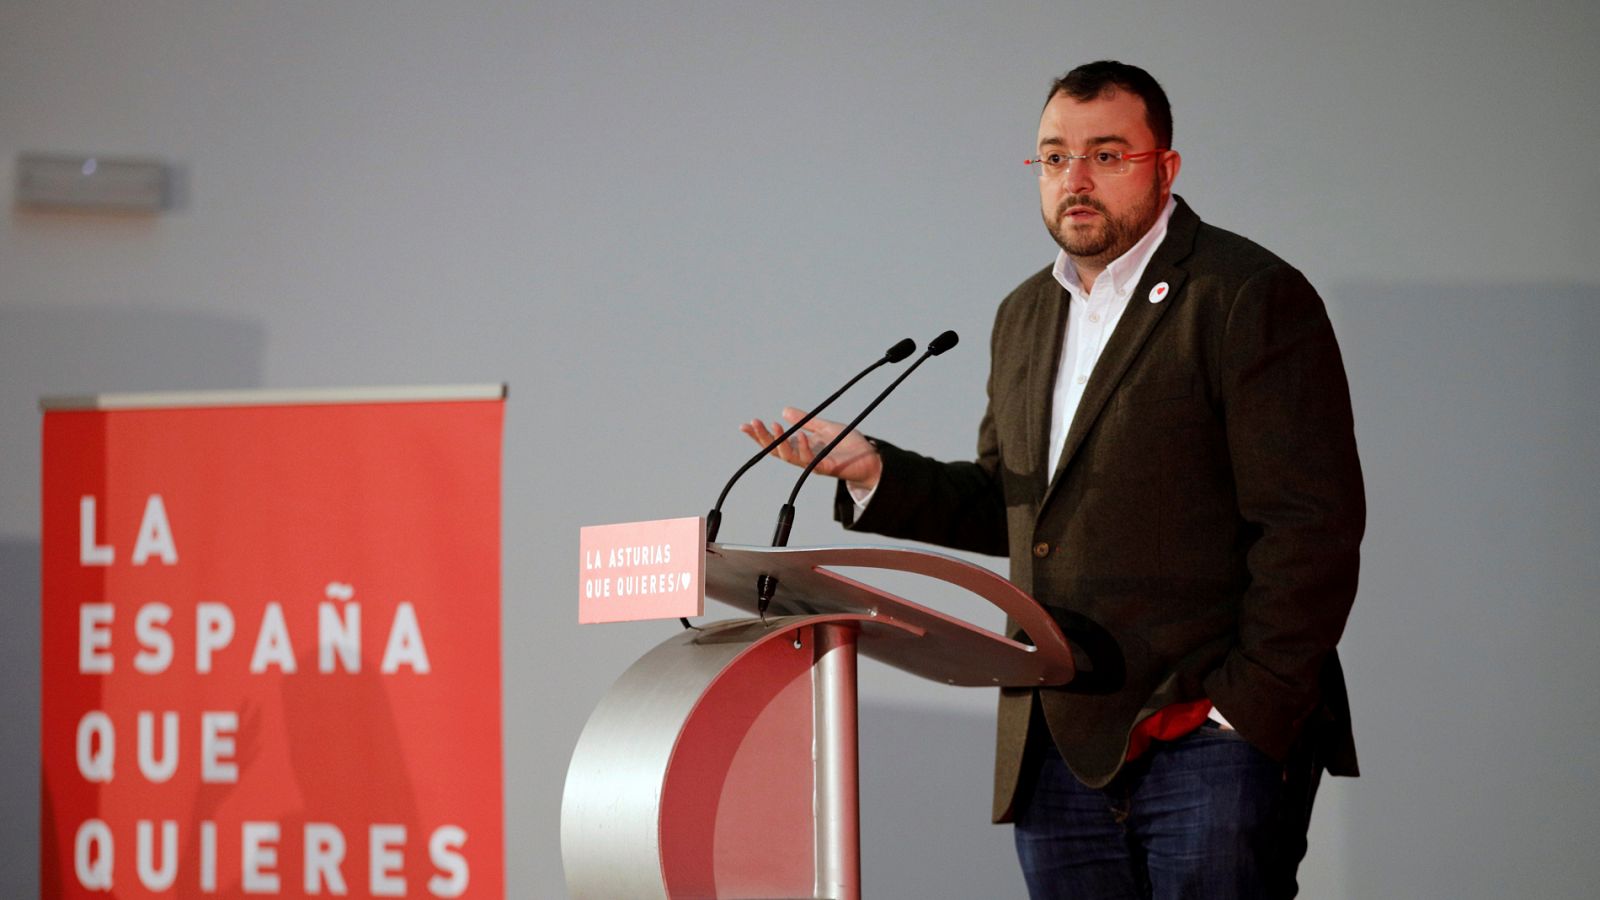 Elecciones autonómicas: Barbón (PSOE) apuesta por el mantenimiento de los servicios públicos en Asturias frente a la despoblación rural - RTVE.es